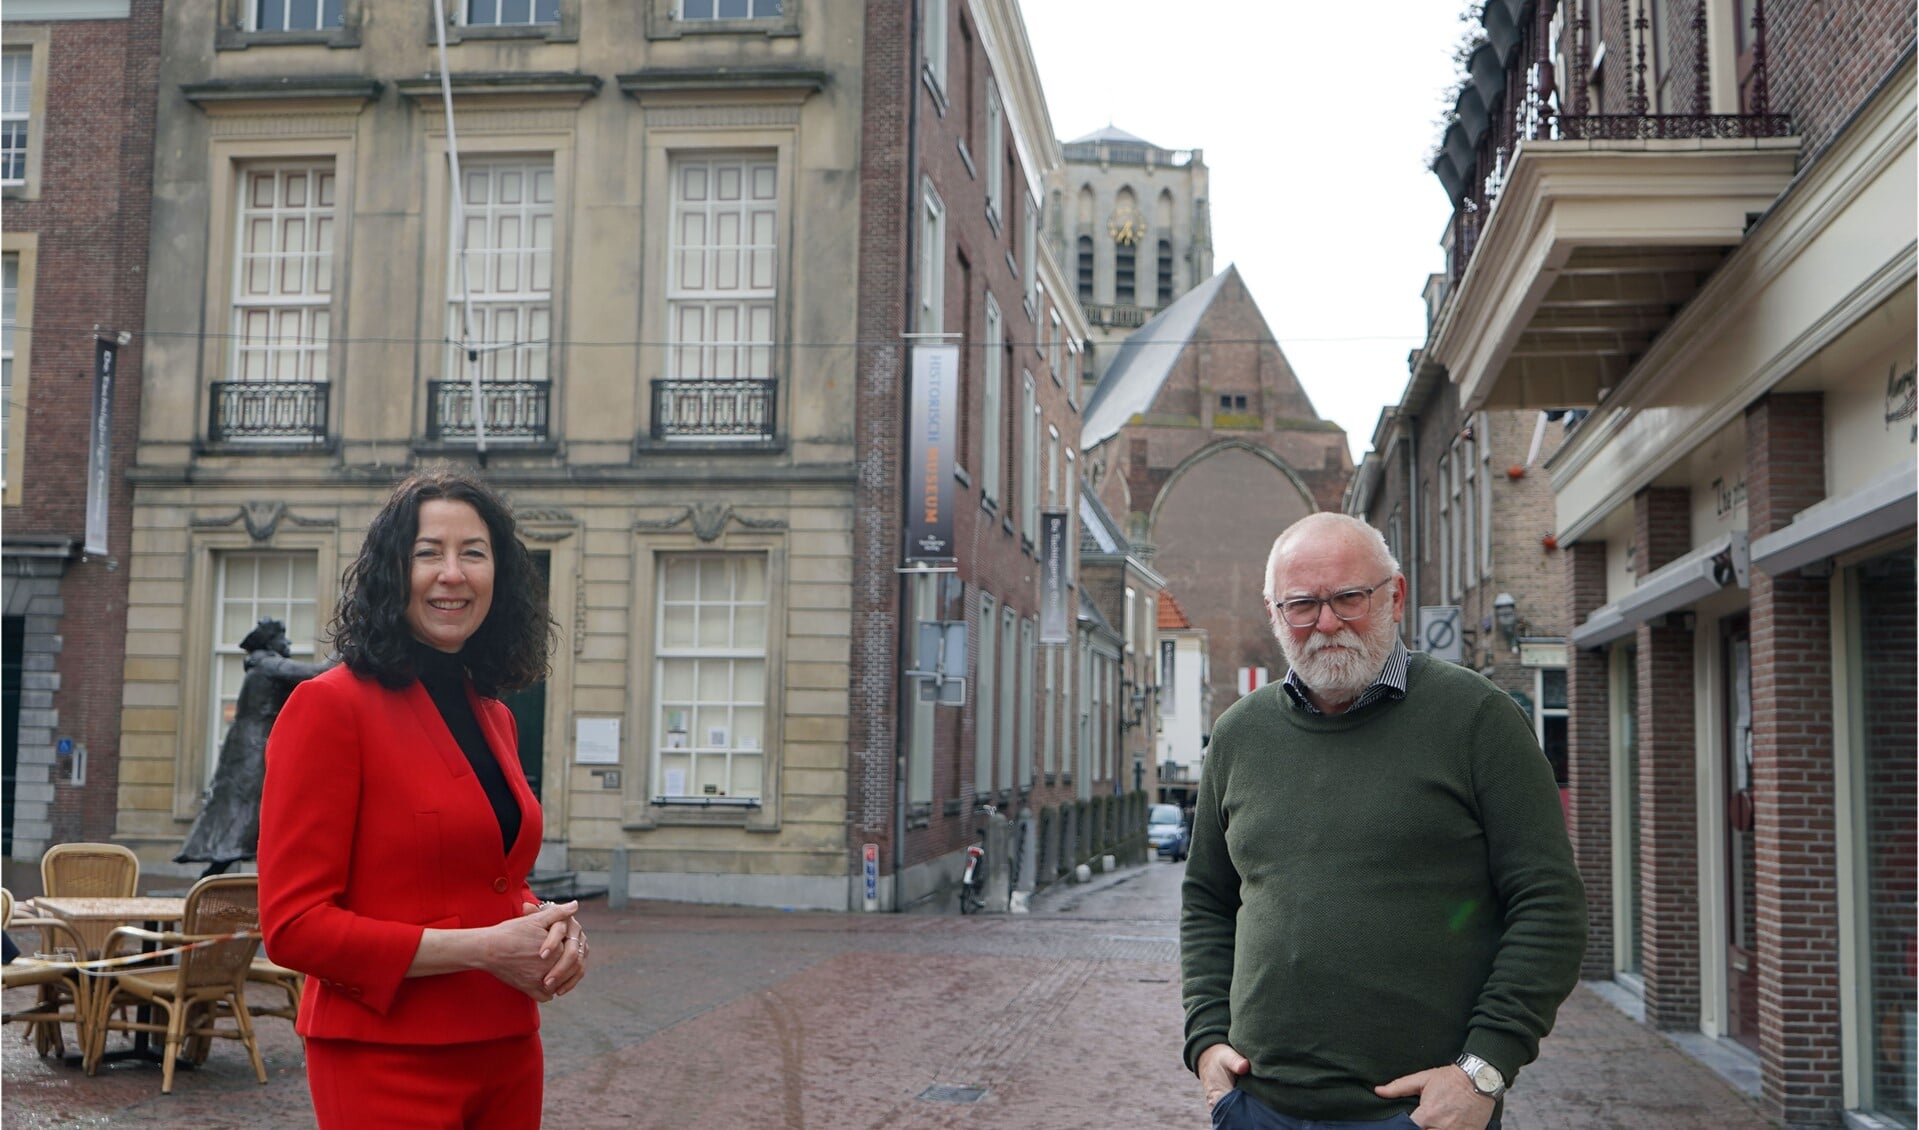 Met hun nieuwe partij willen Wim Smit en Ingrid Dudink zich vooral inzetten voor Brielle en ervoor zorgen dat de eigenheid en cultuur van de stad niet verloren gaan.